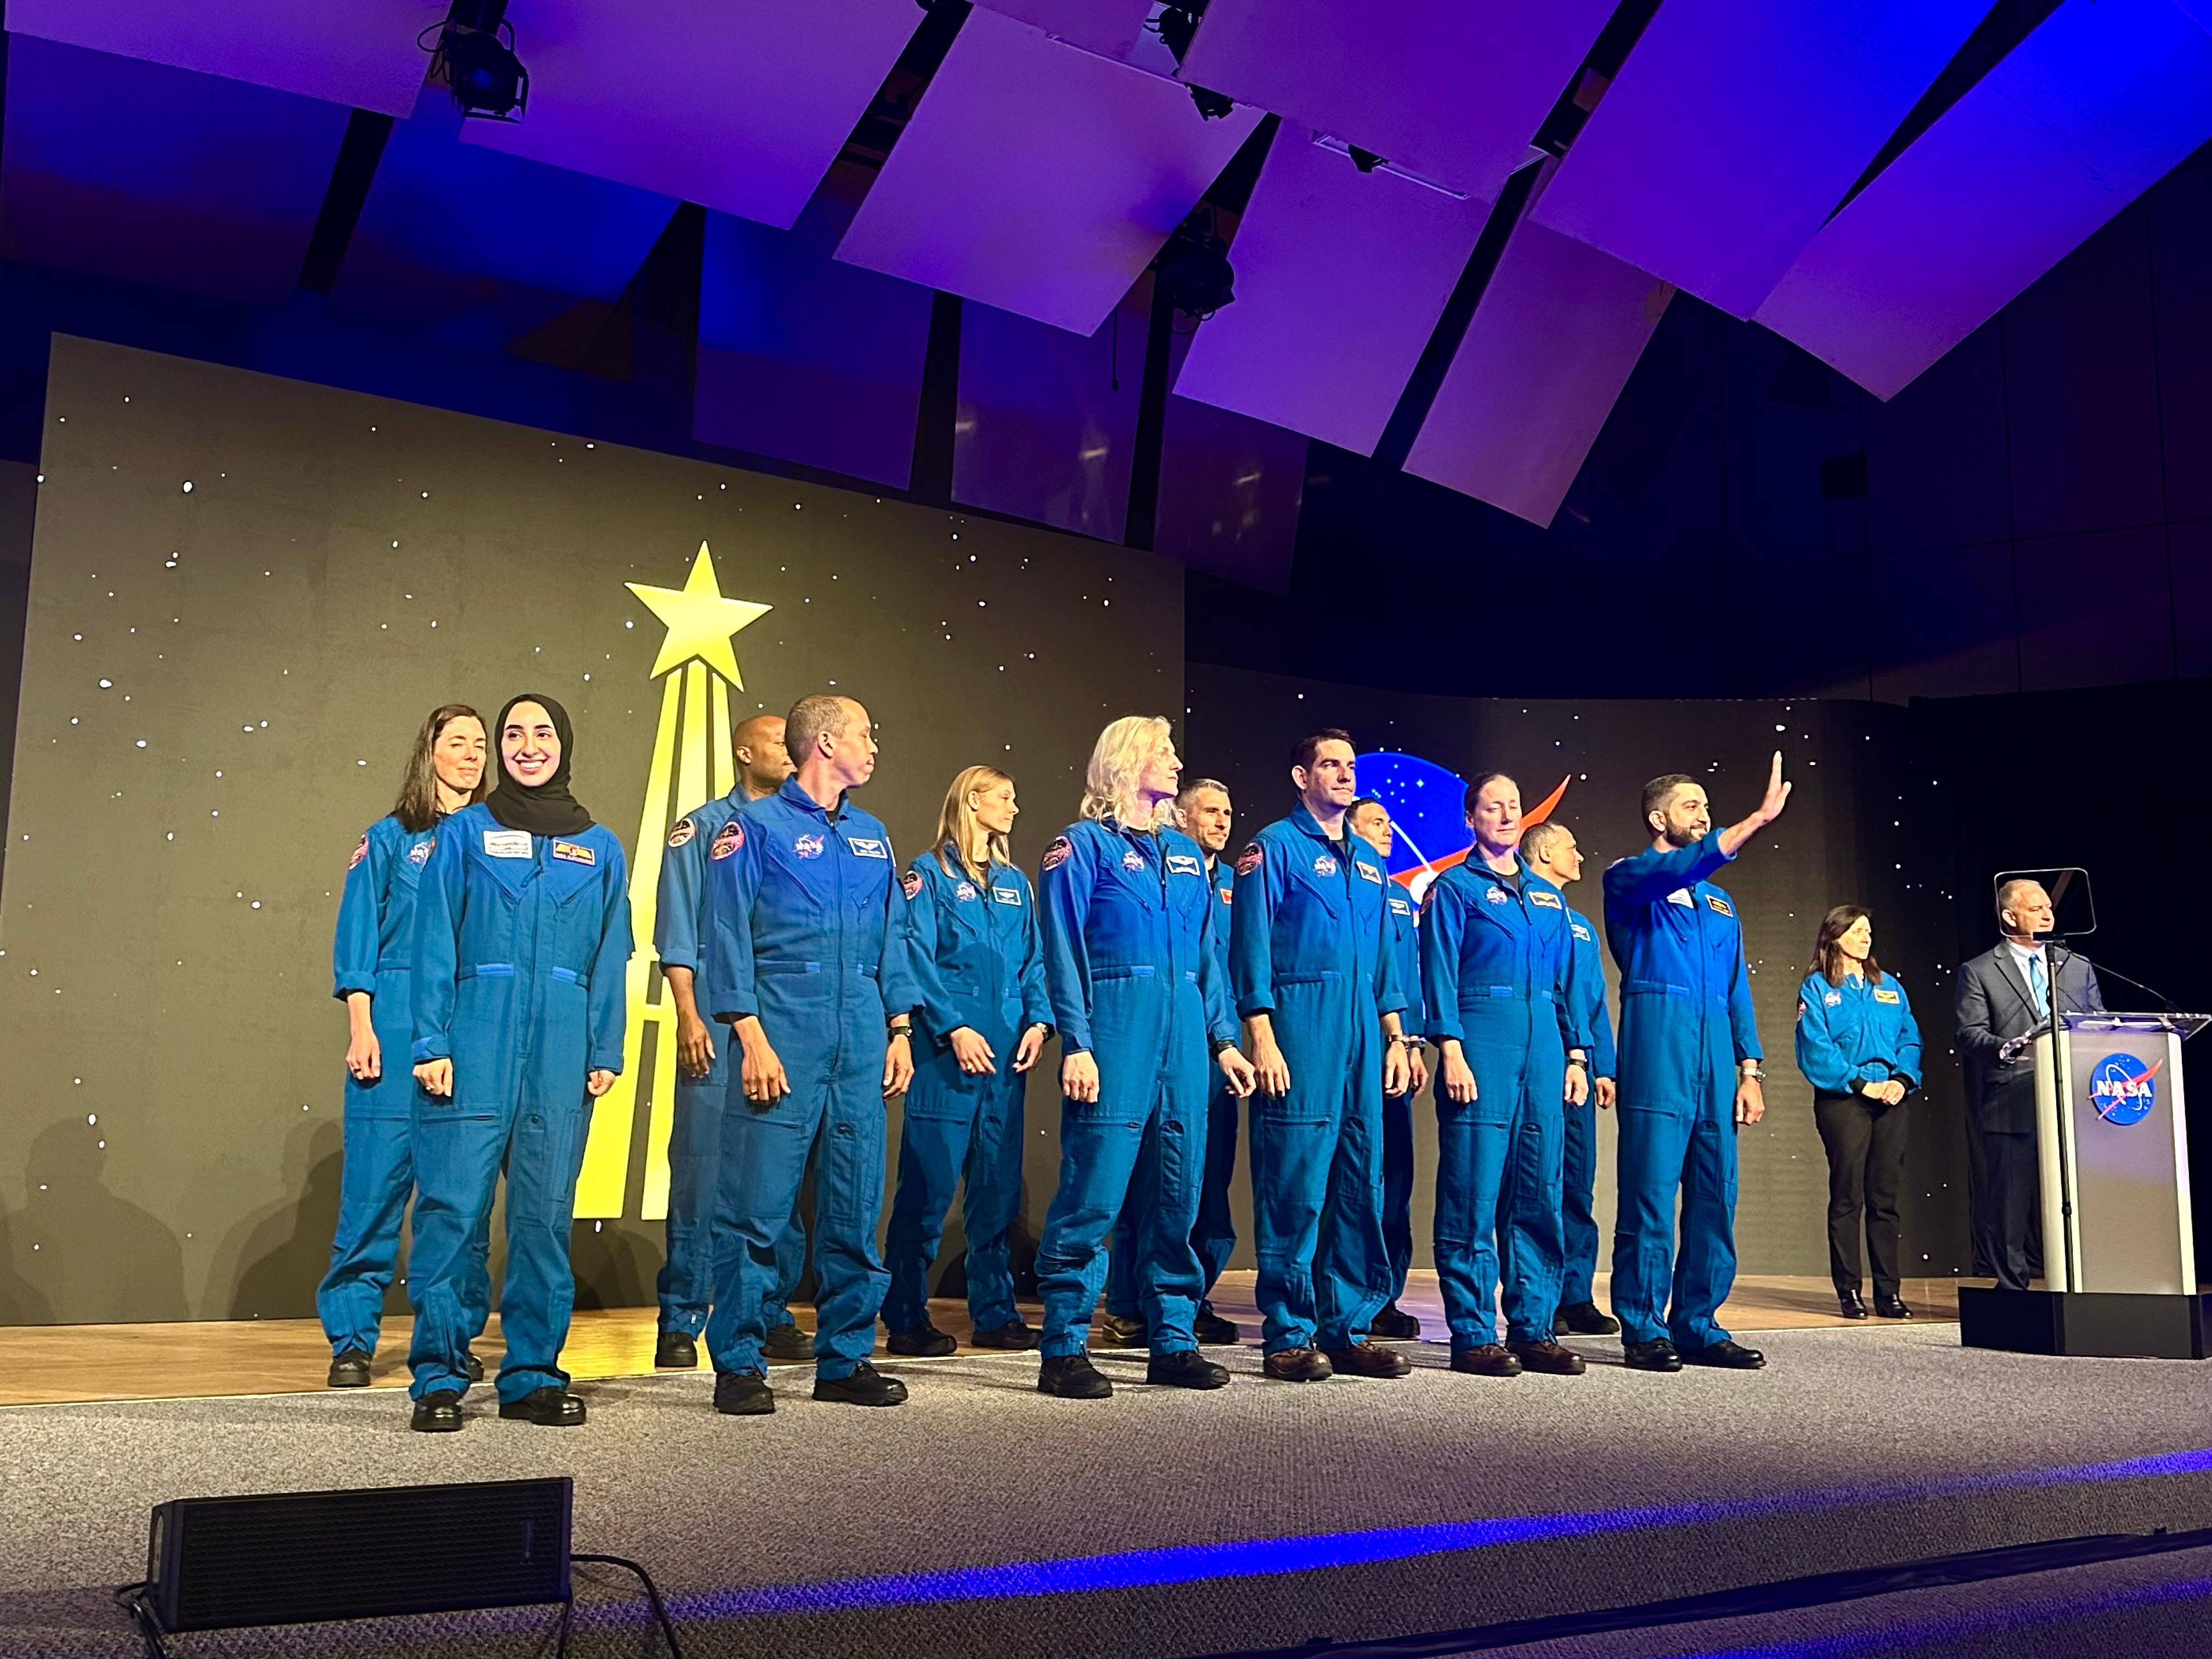 برنامج "ناسا لرواد الفضاء" يقيم احتفالا خاصا بتخريج نورا المطروشي ومحمد الملا